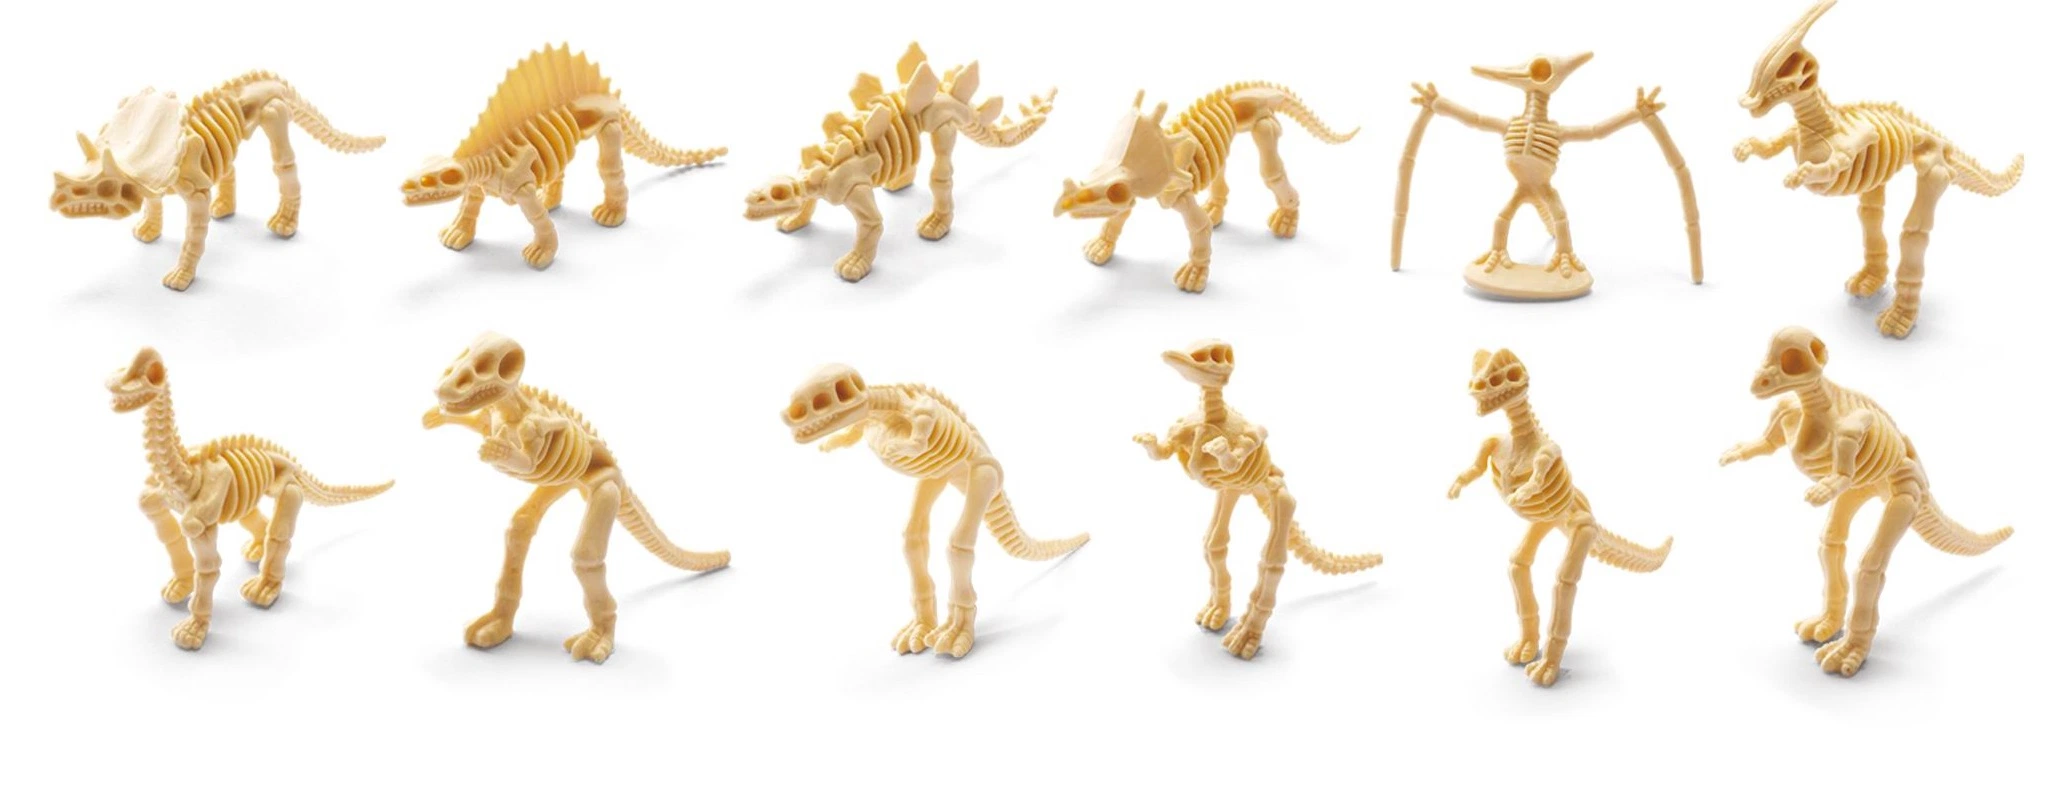 Stem Toy Children Dig Plastic Archeology Fossils Sets Mini Dinosaur Skeleton Excavation Toys for Kids